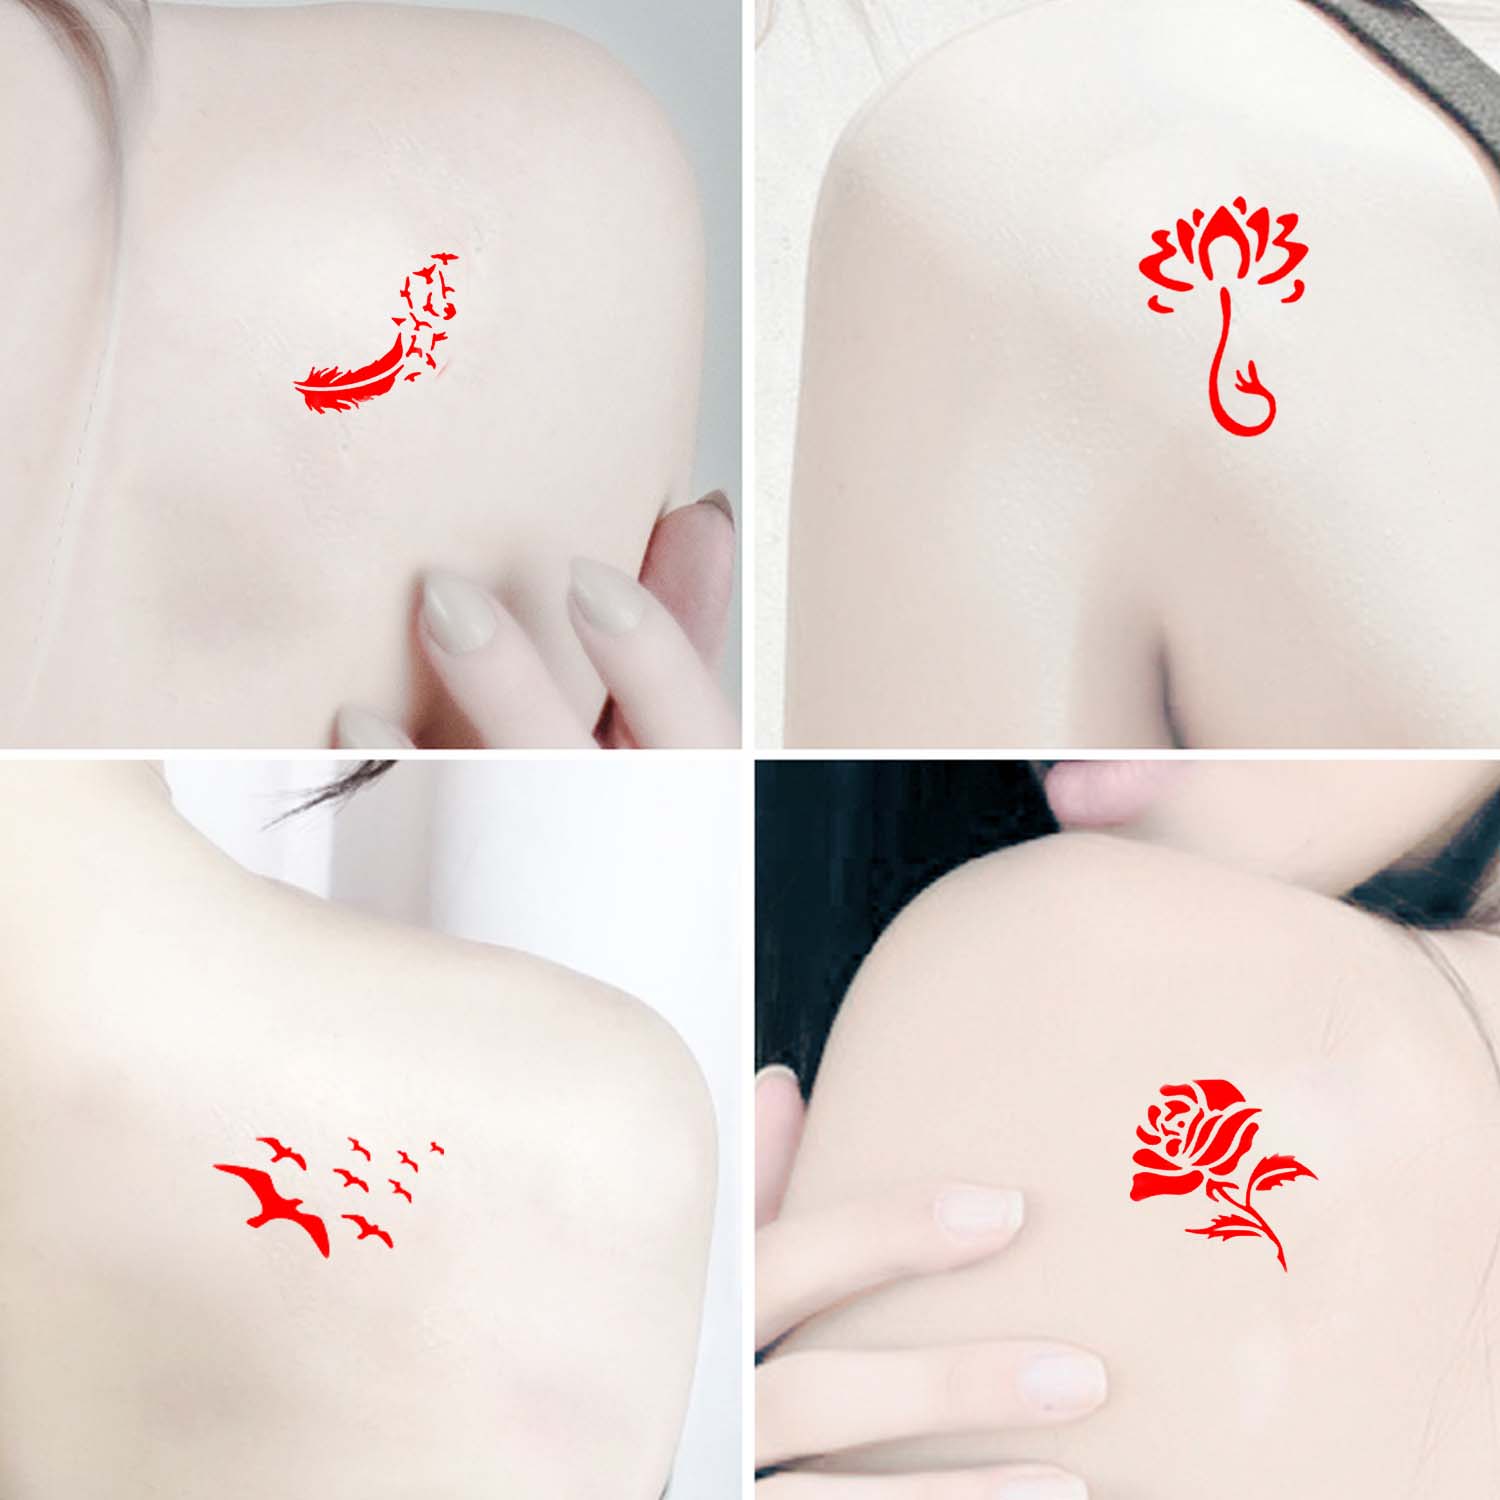 5 Vellen Herbruikbare Henna Tattoo Tijdelijke Stencils Templates Stickers Voor Mannen Vrouwen Body Paint Art Bruiloft Verjaardagsfeestje